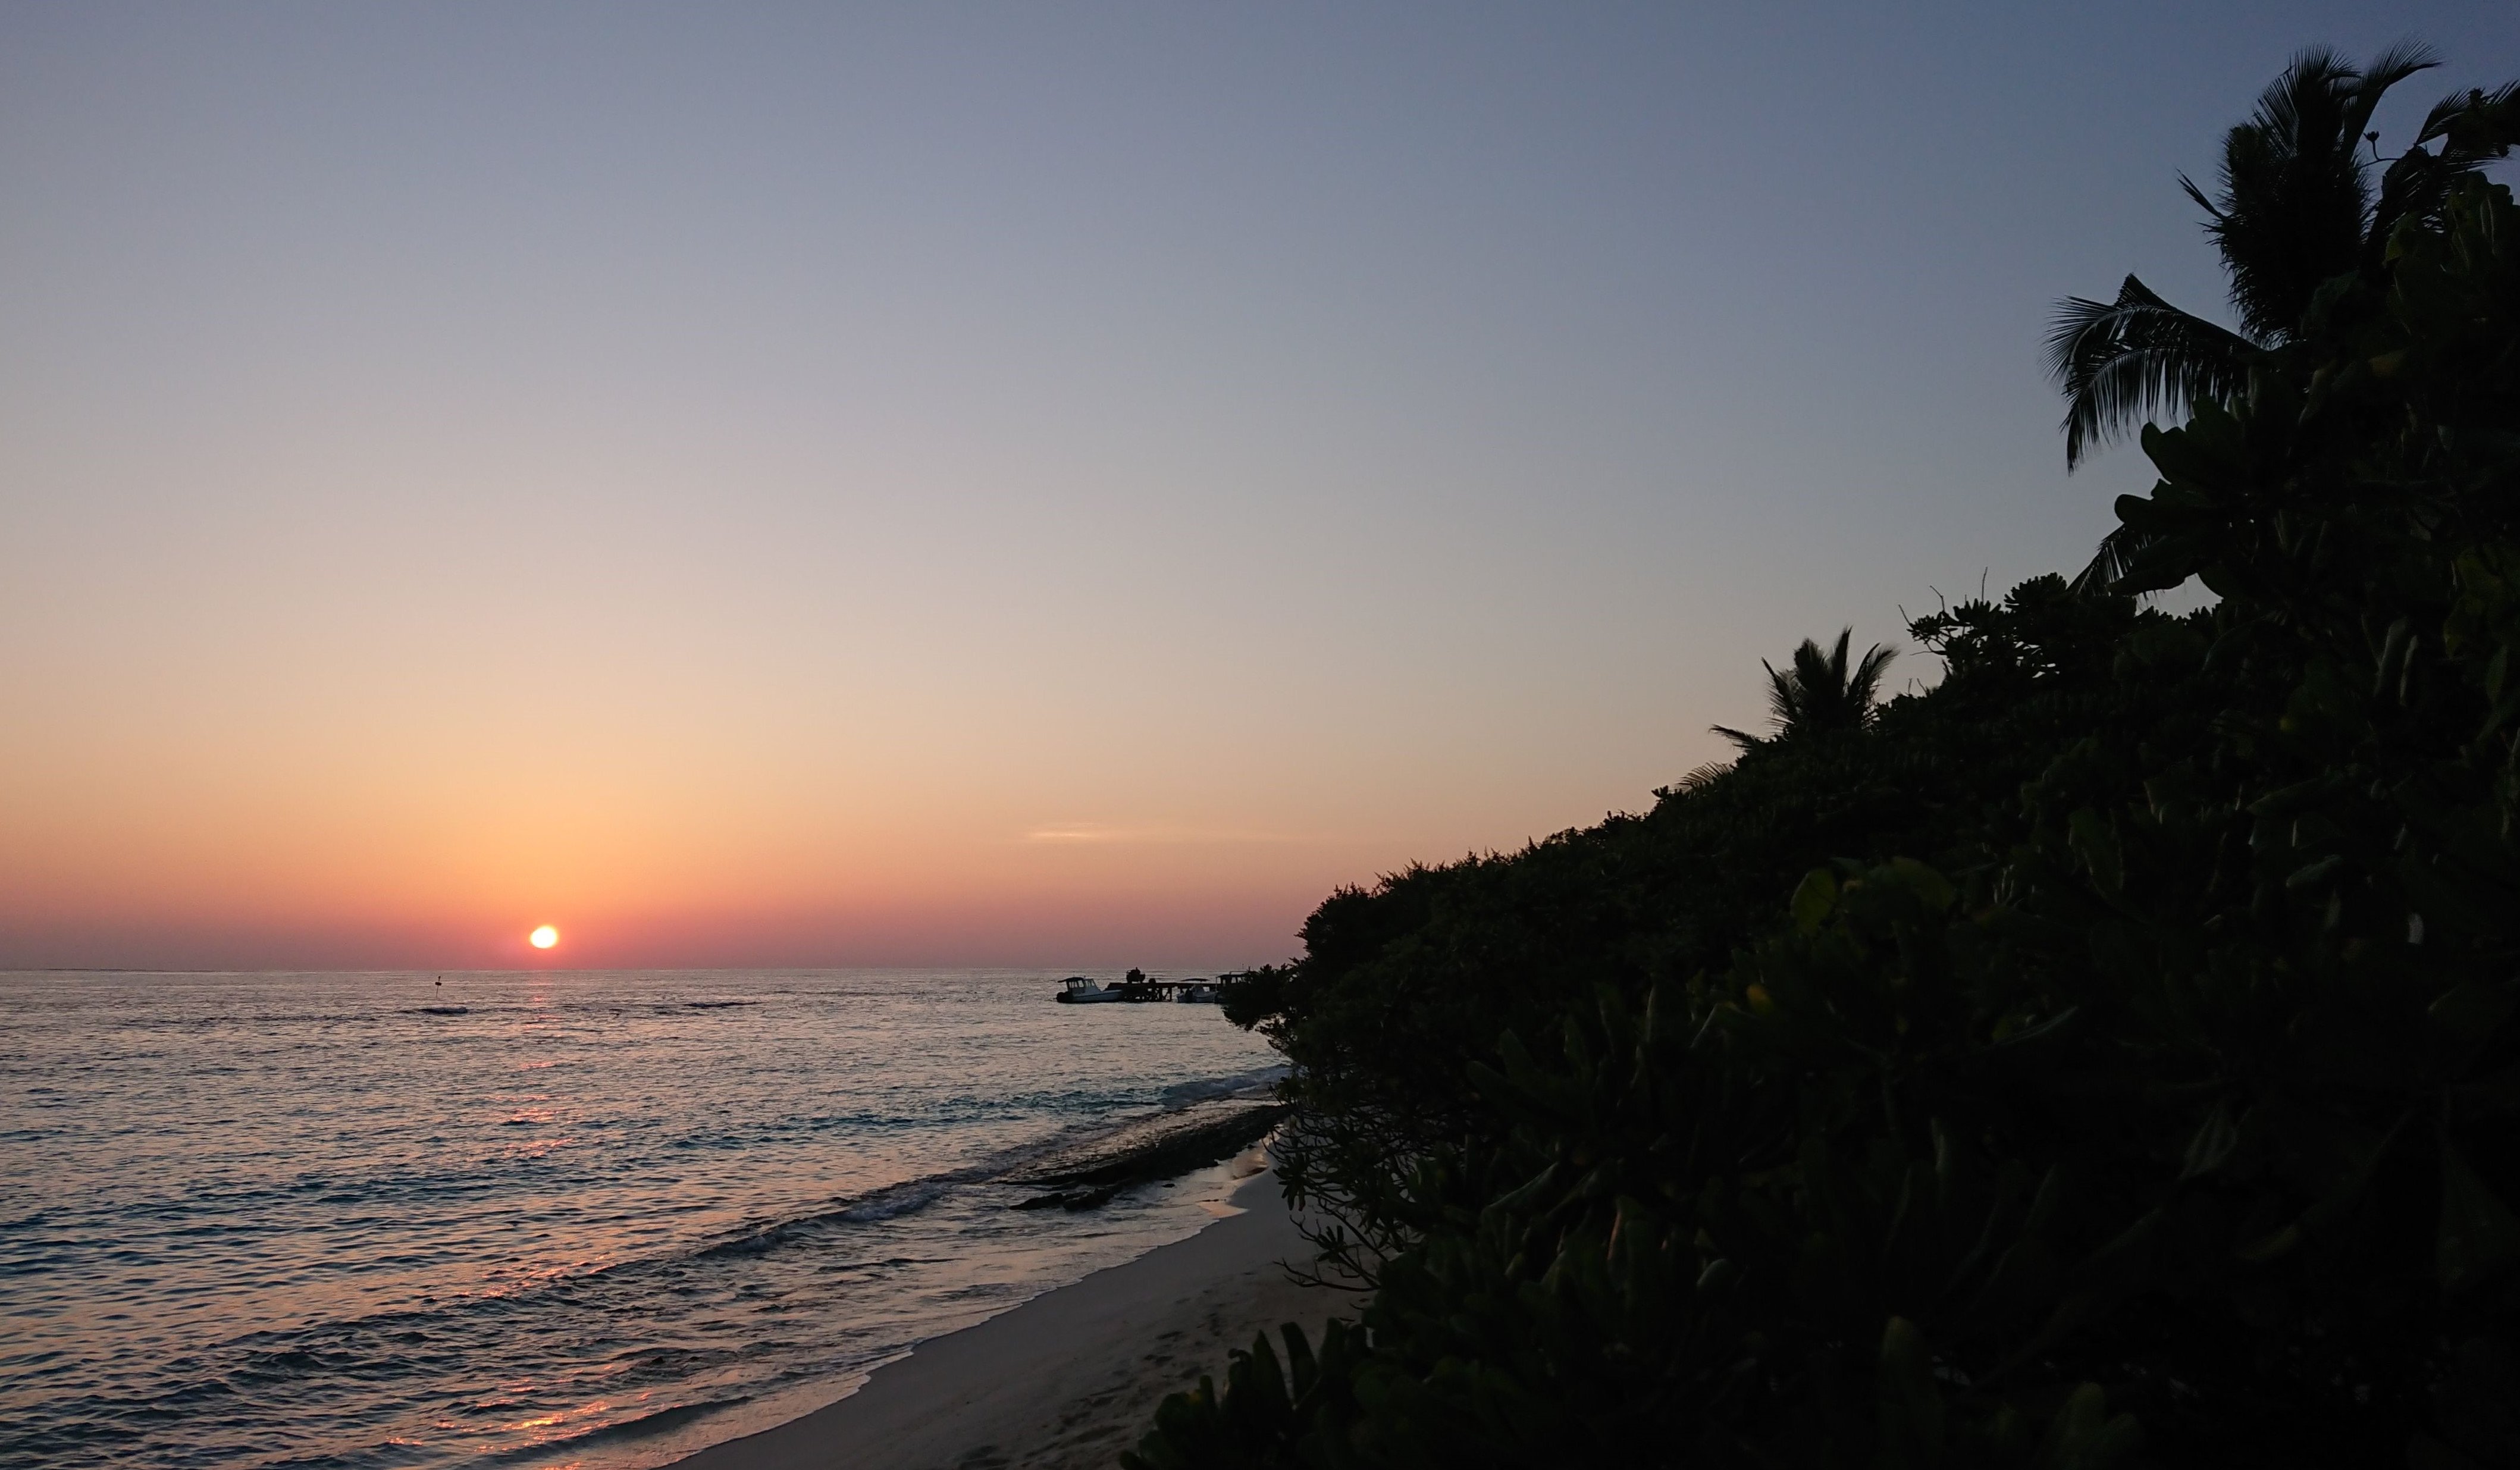 Sonnenuntergang am Strand der Insel Soneva Fushi, einem Luxus-Resort auf den Malediven